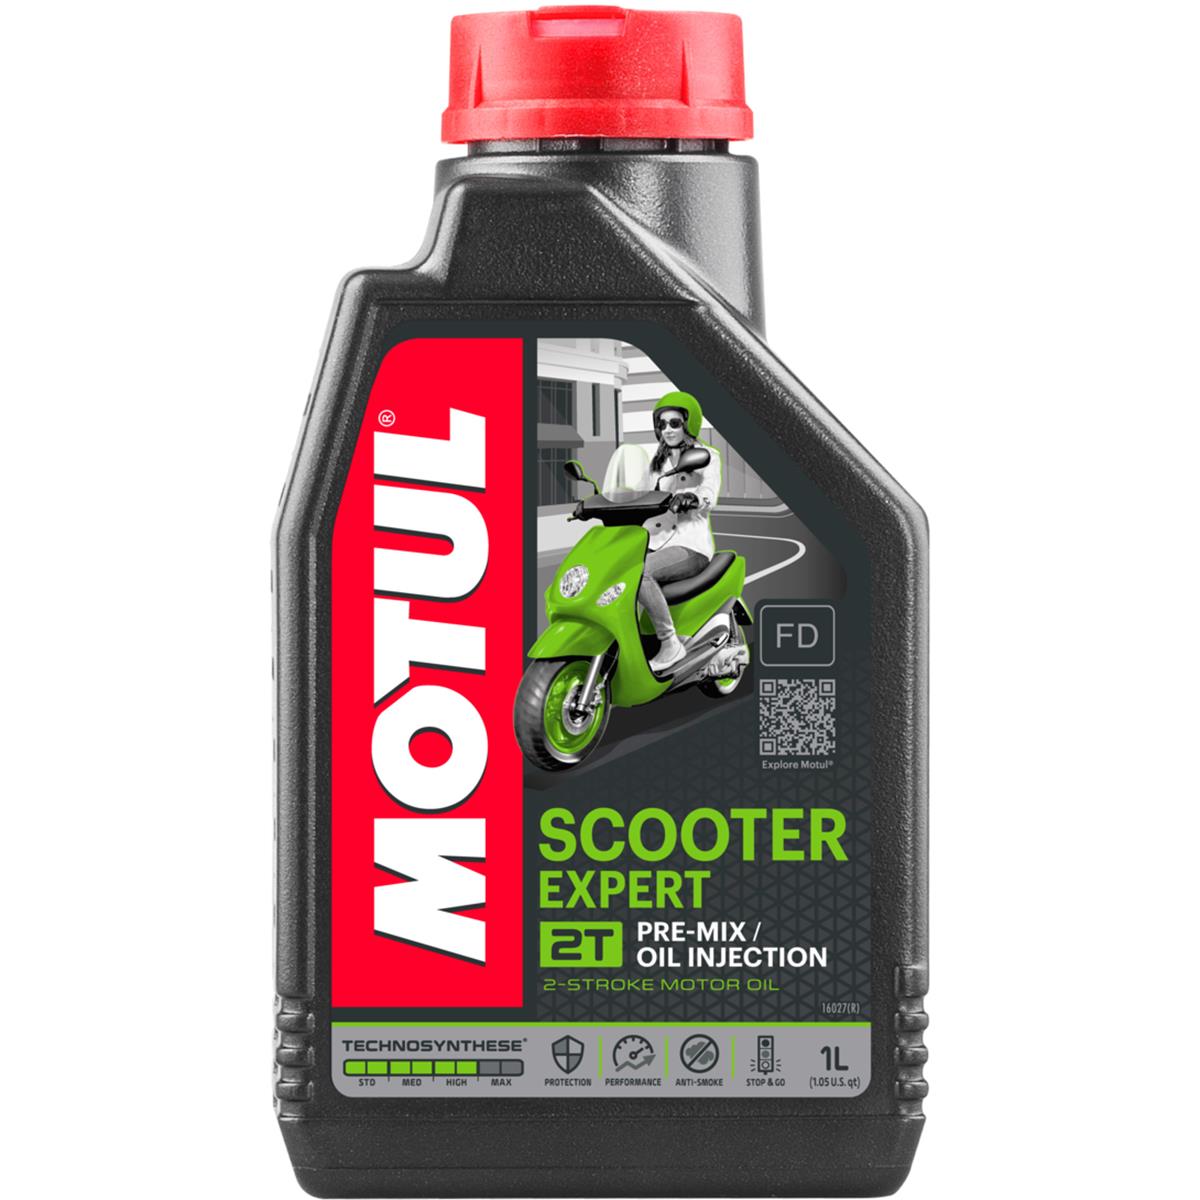 Motul Huile Moteur Scooter Expert 2-Stroke, 1 Liter